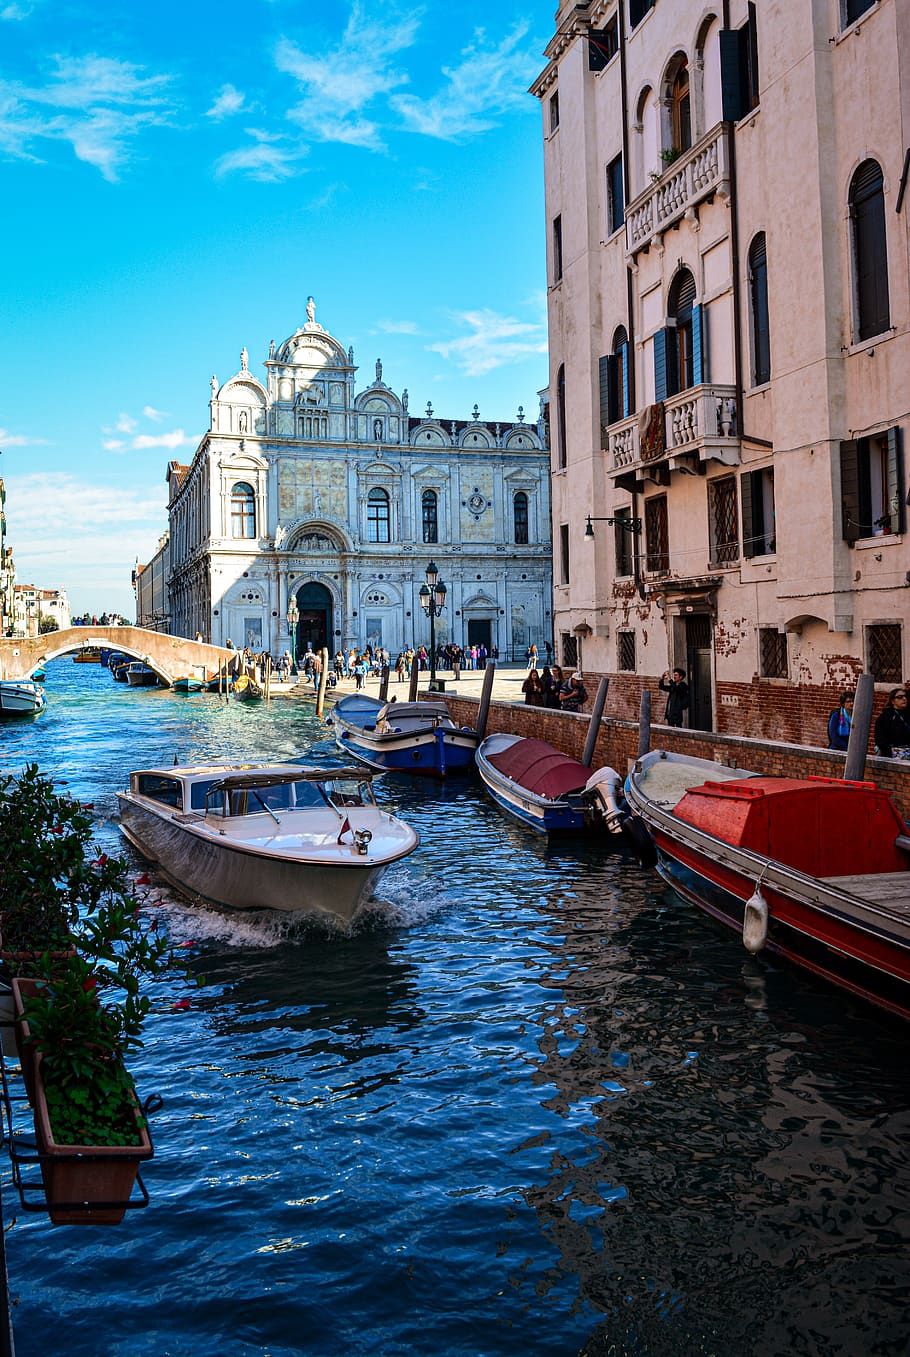 Venecia, Italia, arquitectura, canal, agua, ciudad, edificio, viajes, turismo, romántico